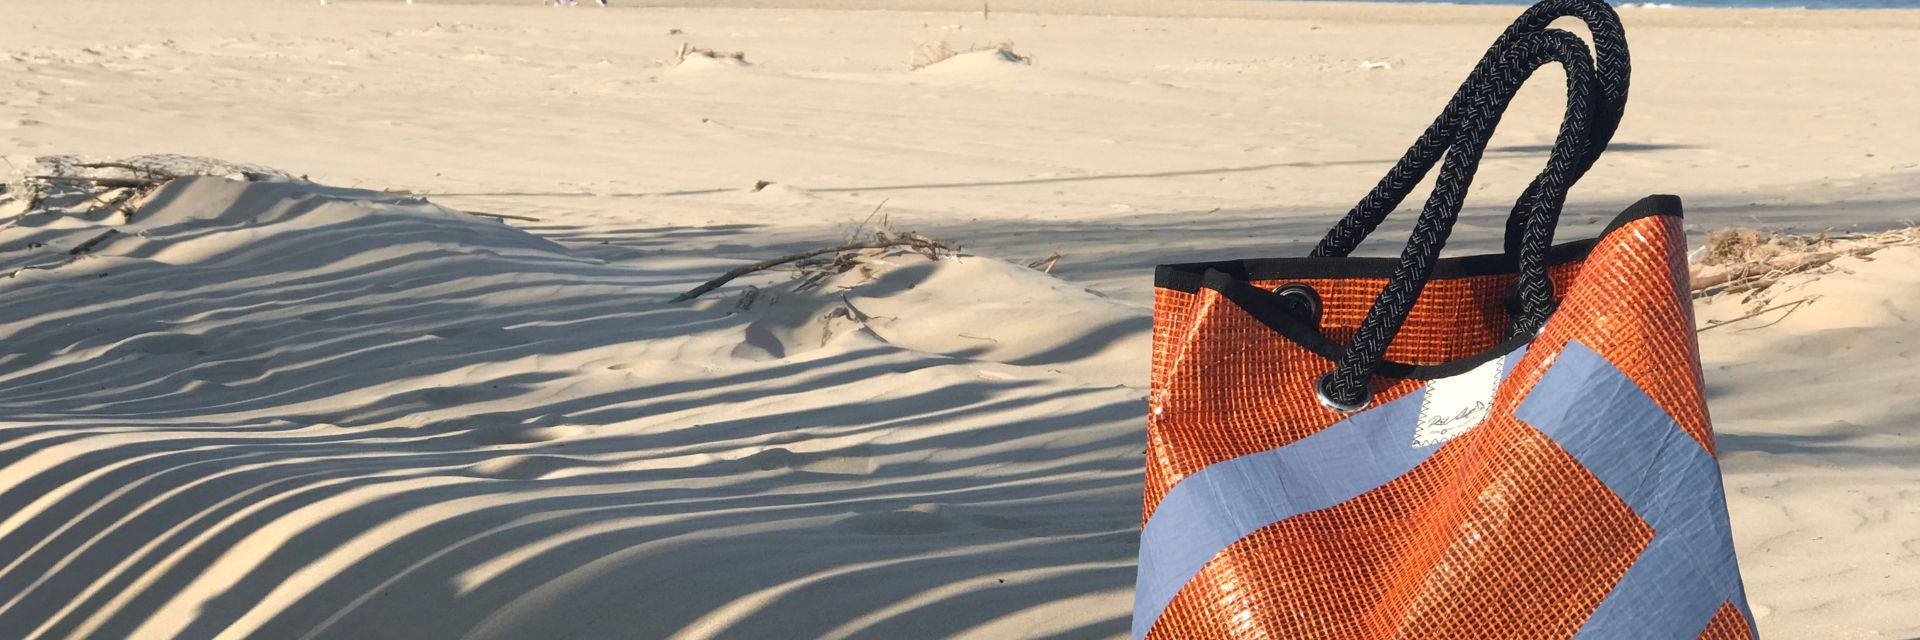 Borsa da mare arancione appoggiata sulla sabbia